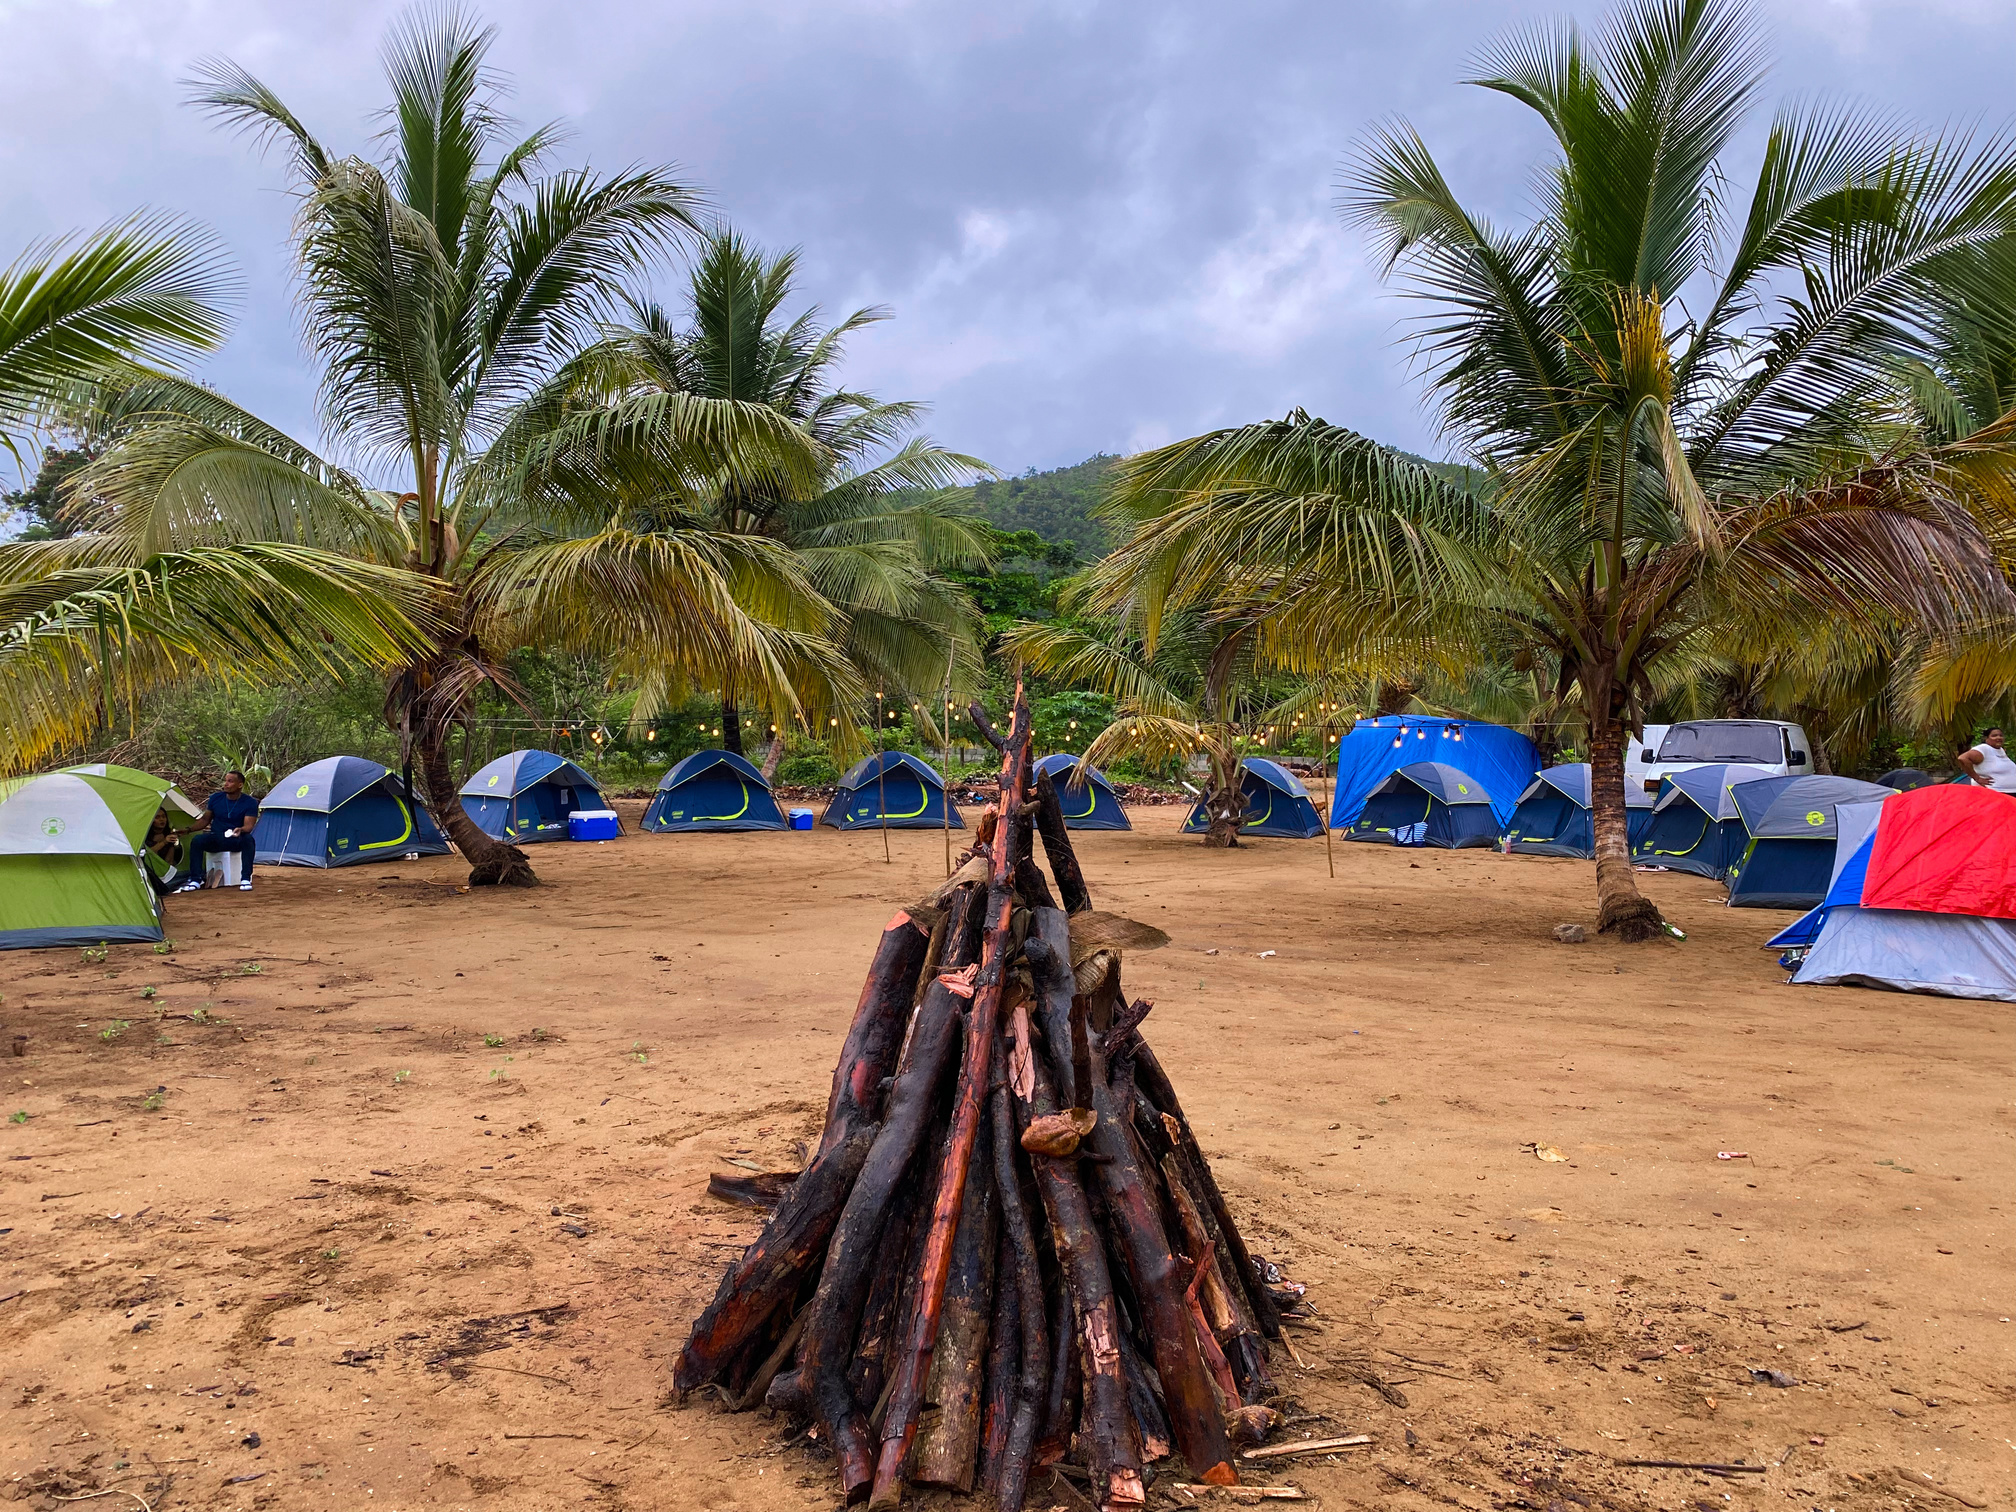 Campamento, Samaná, Playa el Valle, Casas de Campaña, Fogata, Luces, Coco, Camping Tents.